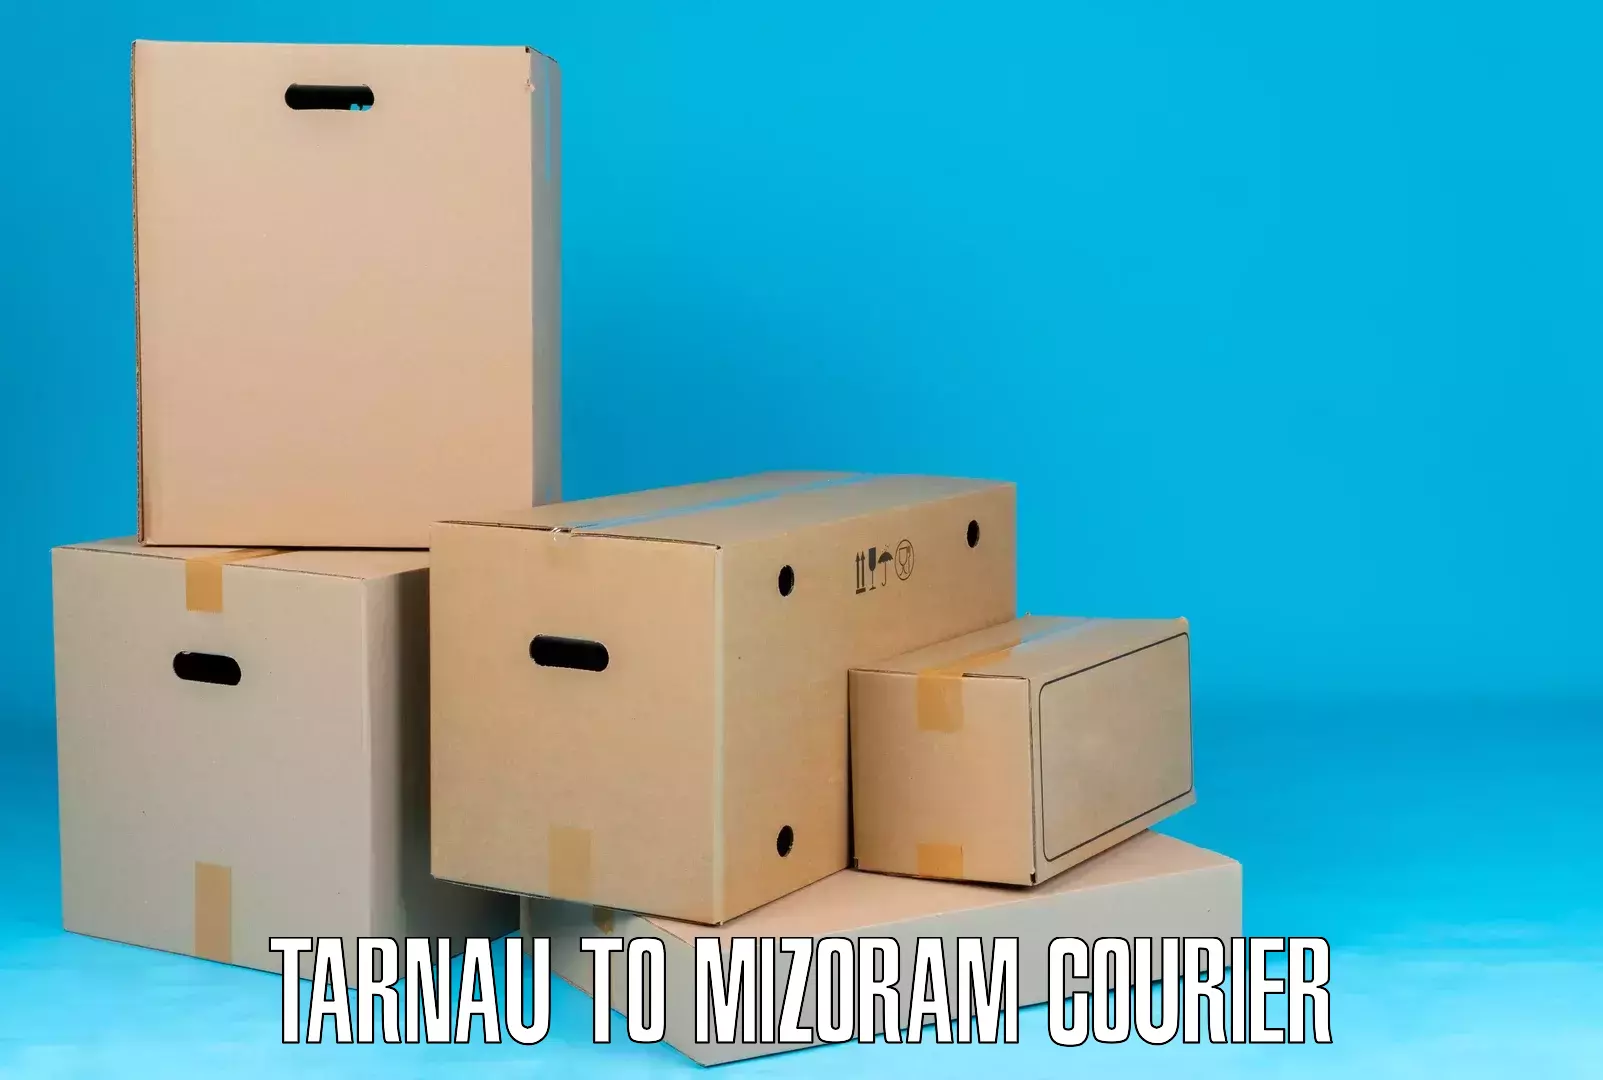 Efficient freight service Tarnau to Darlawn